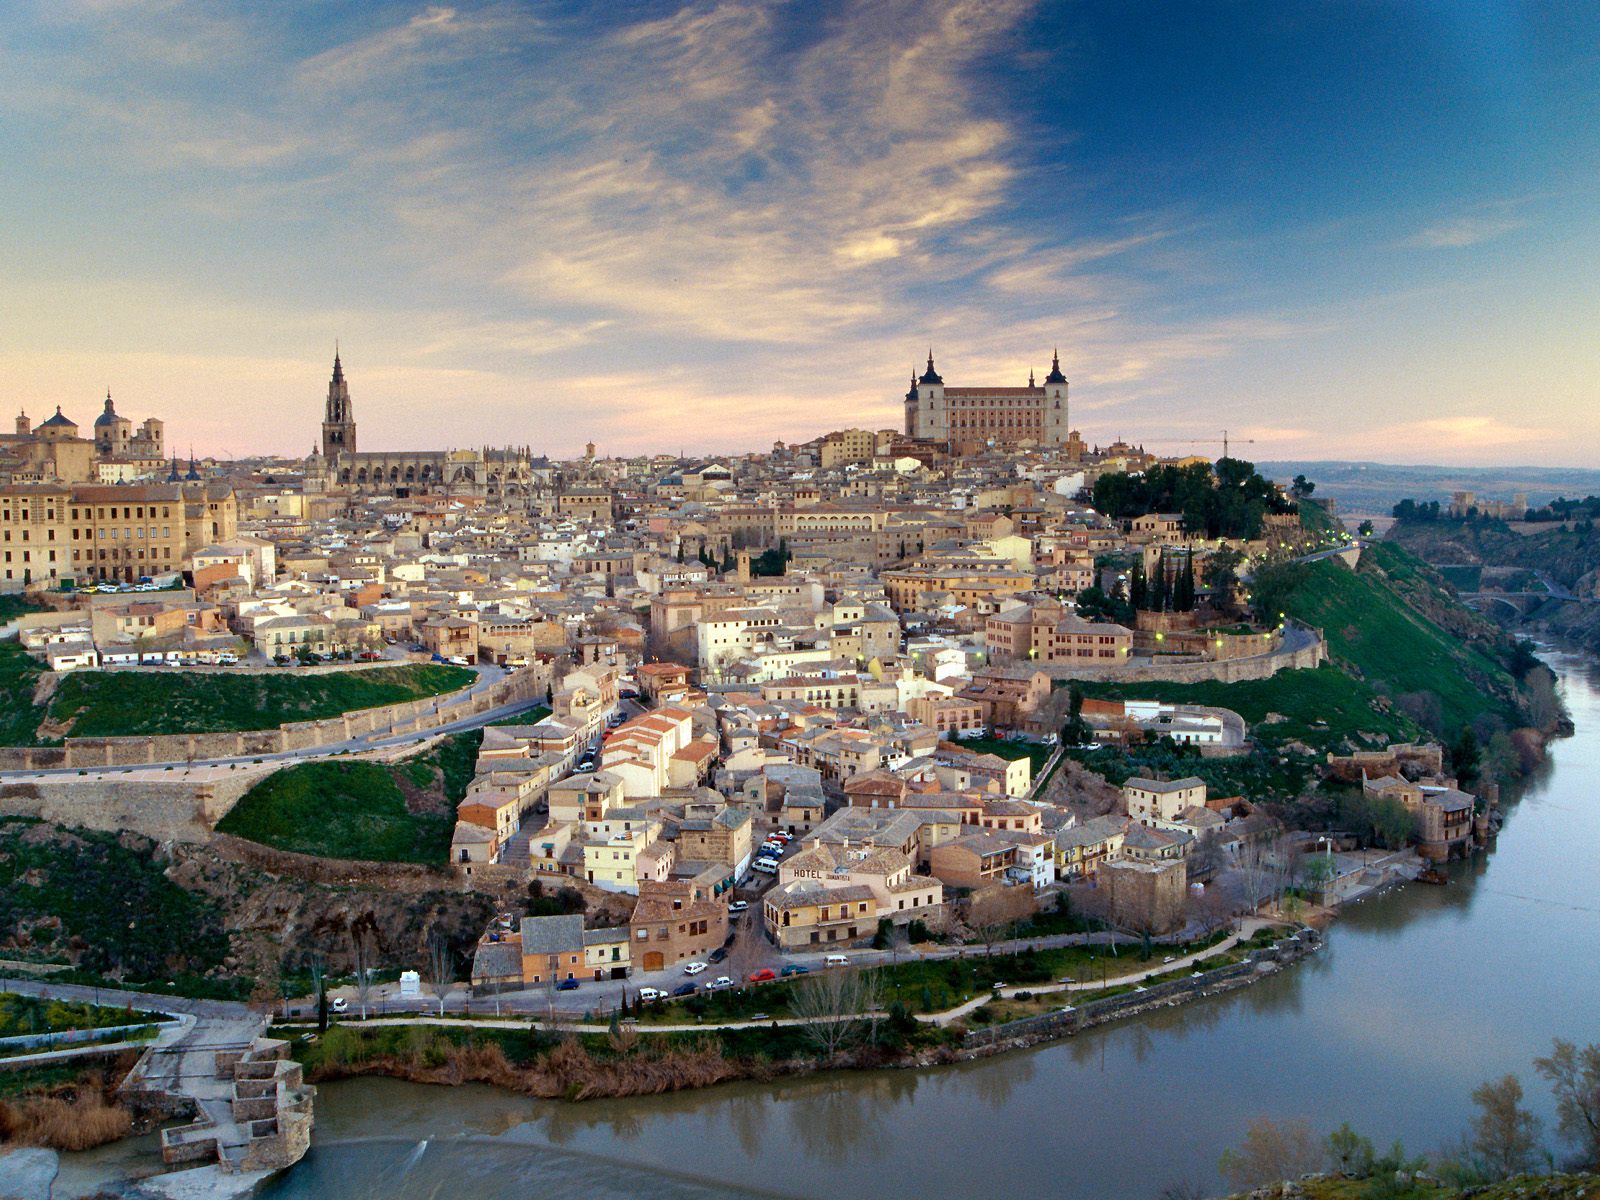 http://www.citypictures.org/data/media/228/Toledo_Spain.jpg